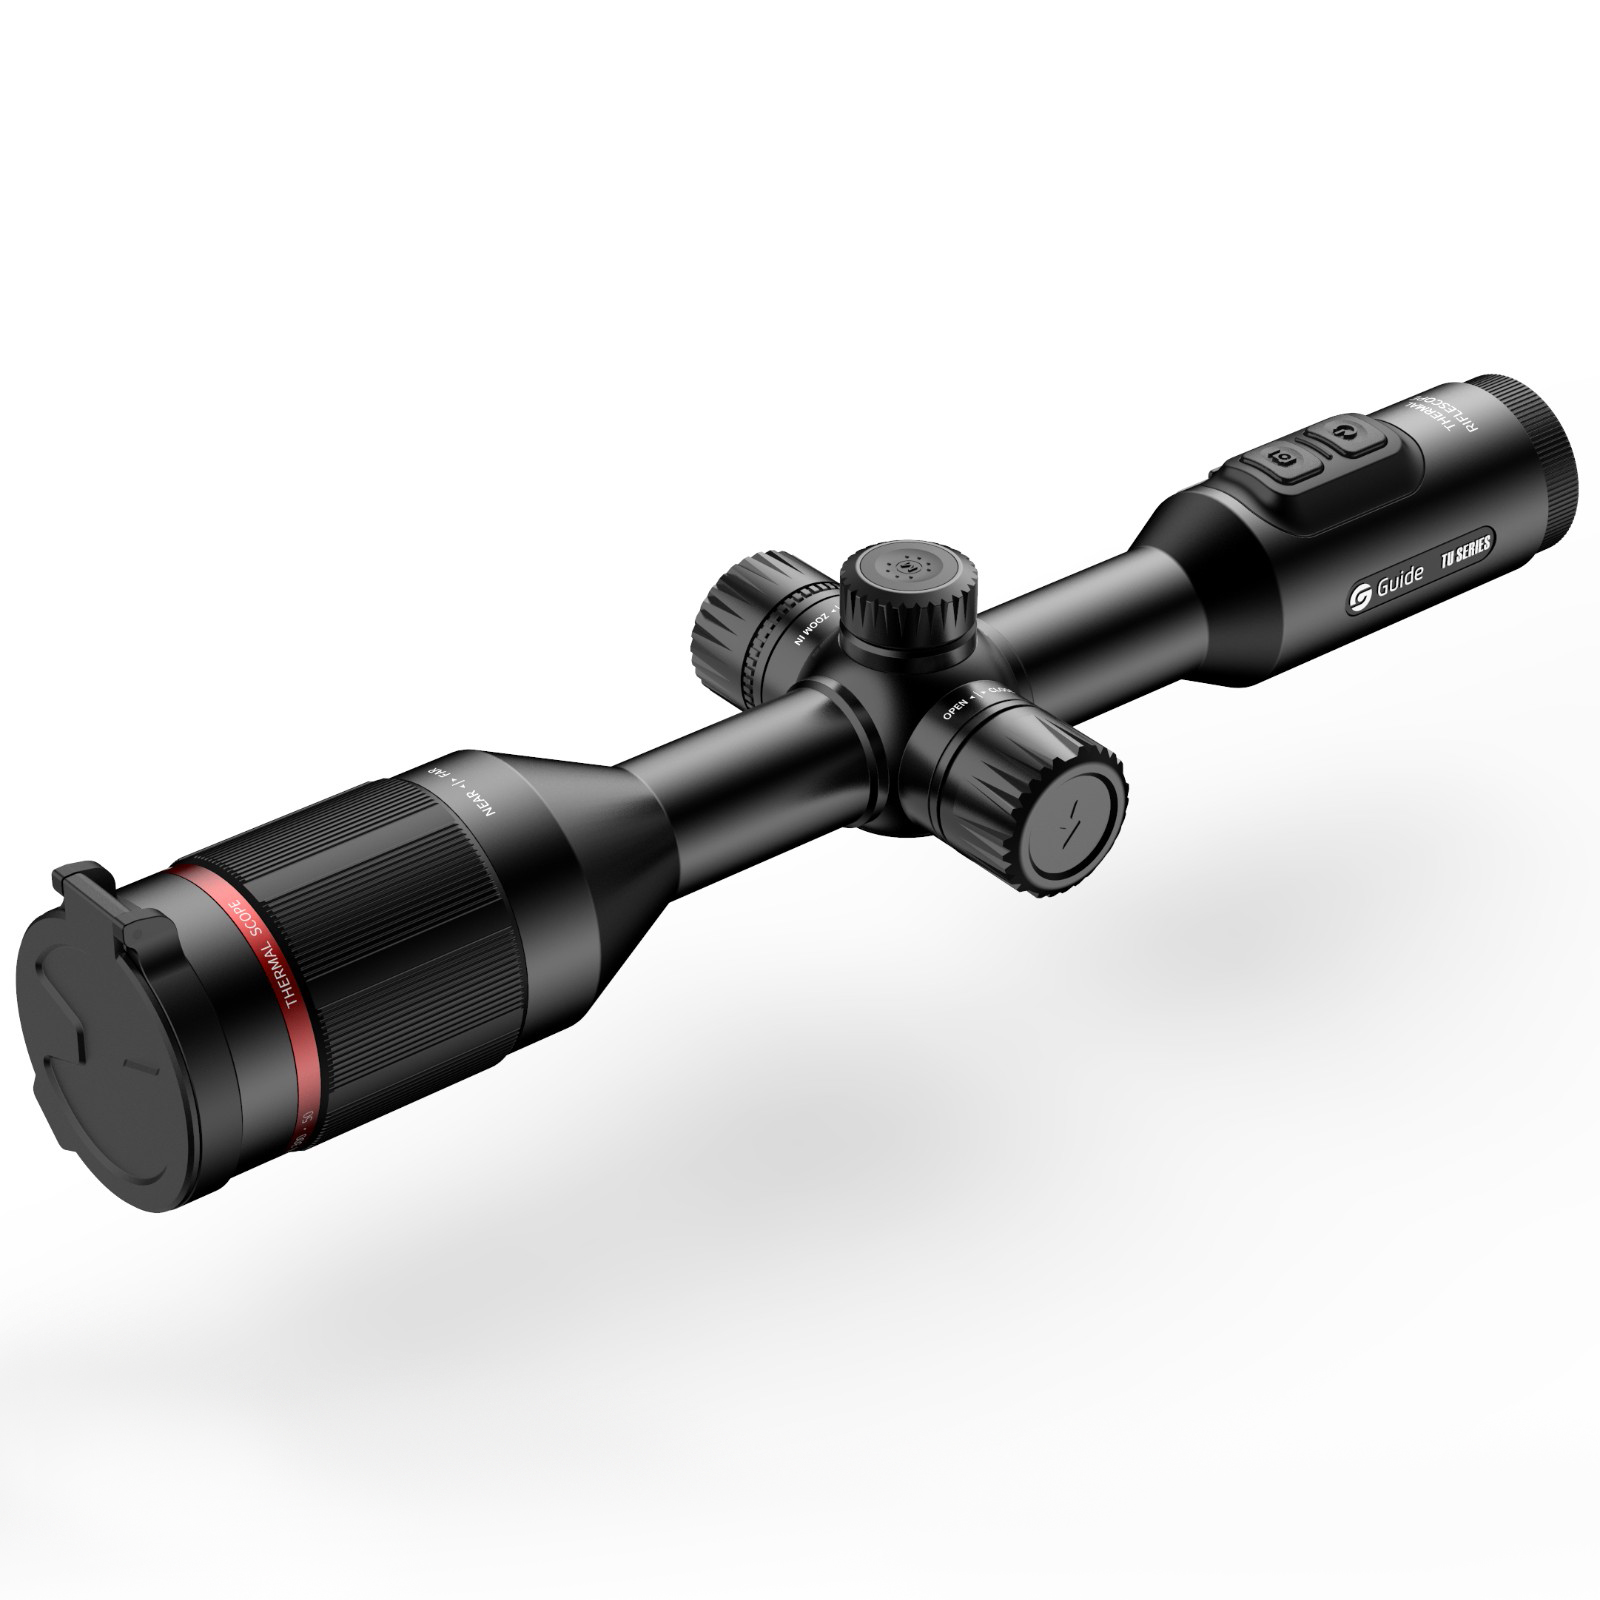 高德智感TU620瞄准镜式红外热像仪图片